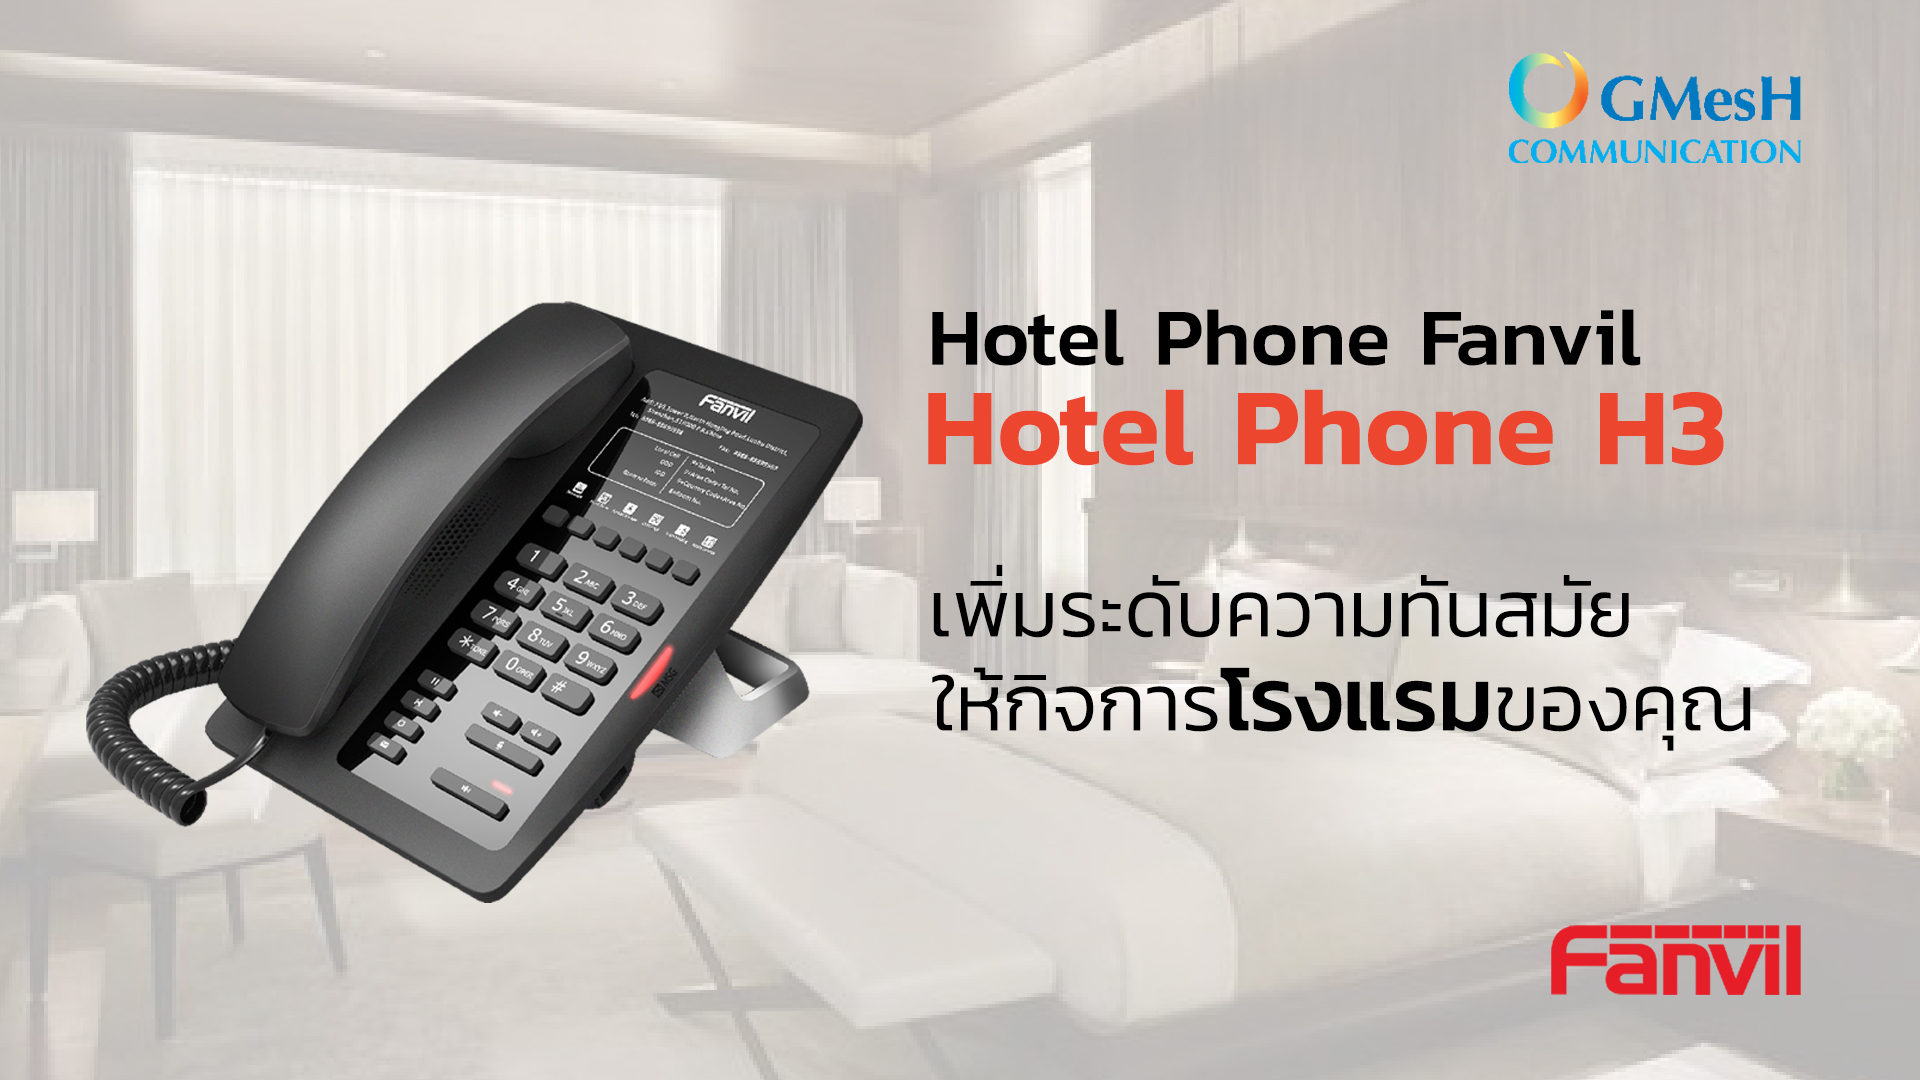 กิจการโรงแรม ต้องใช้! Hotel Phone Fanvil Hotel Phone H3 เพิ่มระดับความทันสมัย